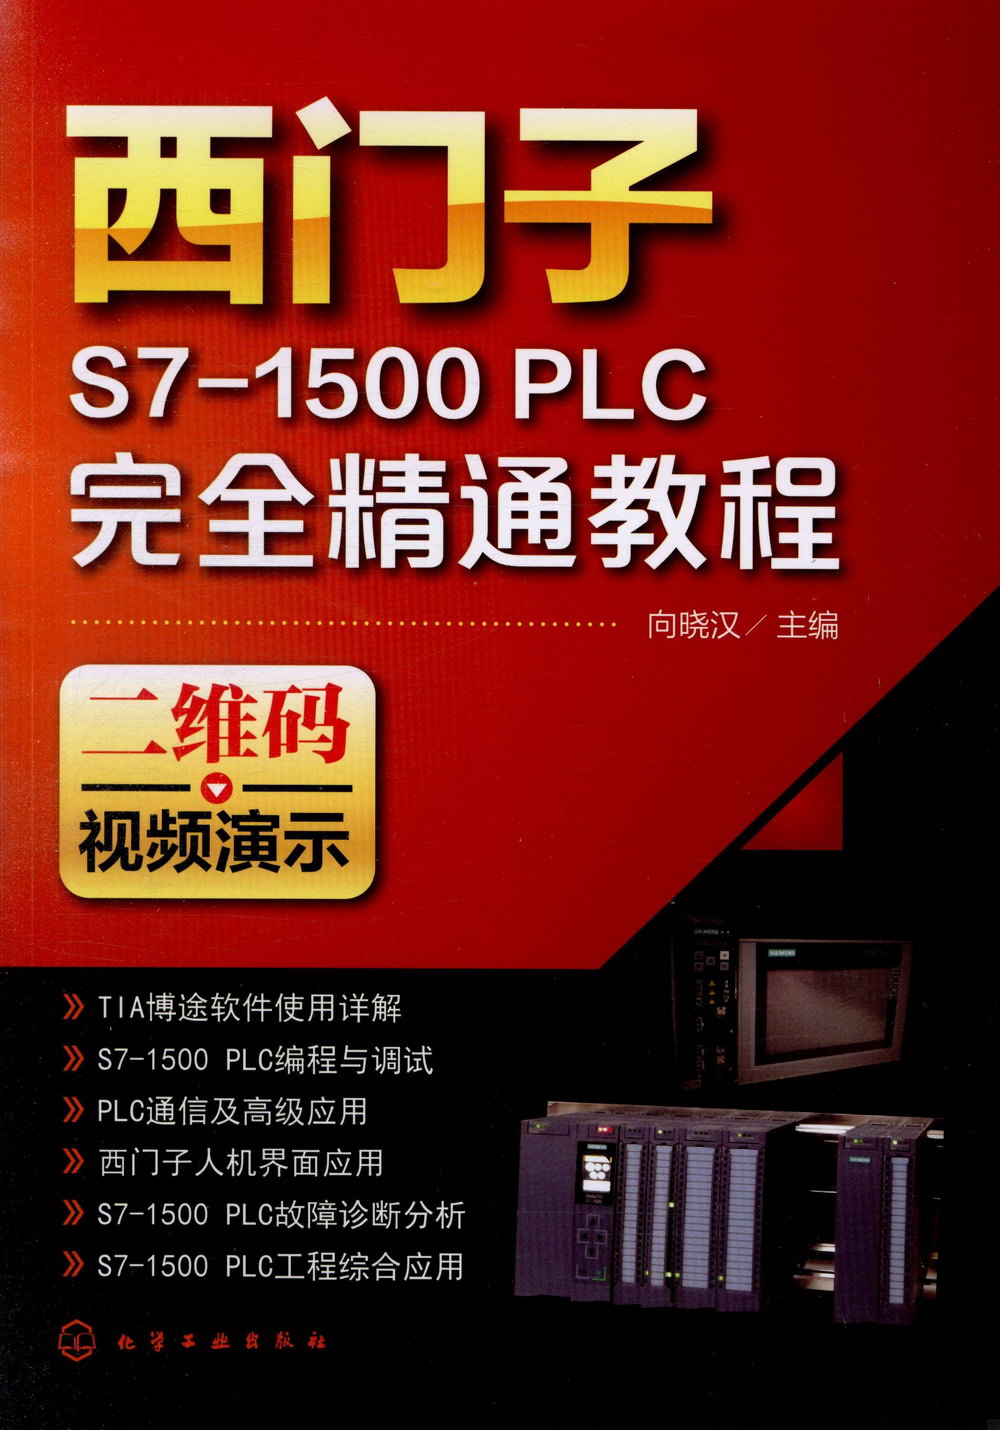 西門子S7-1500 PLC完全精通教程